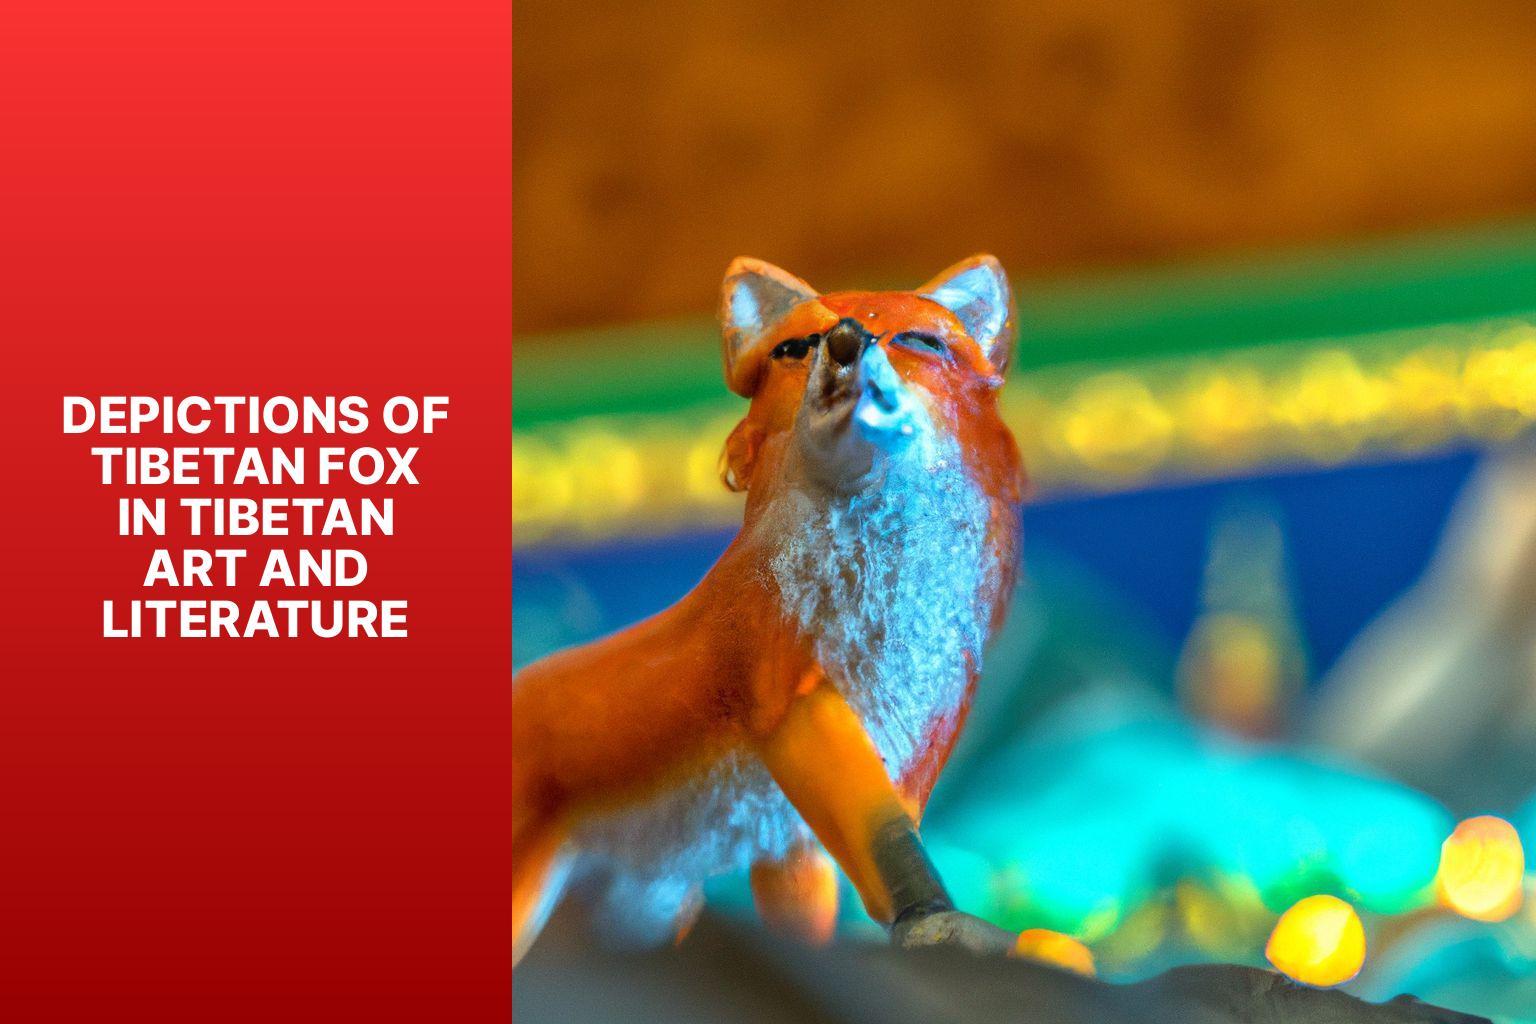 Depictions of Tibetan Fox in Tibetan Art and Literature - Tibetan Fox in Tibetan Buddhism 